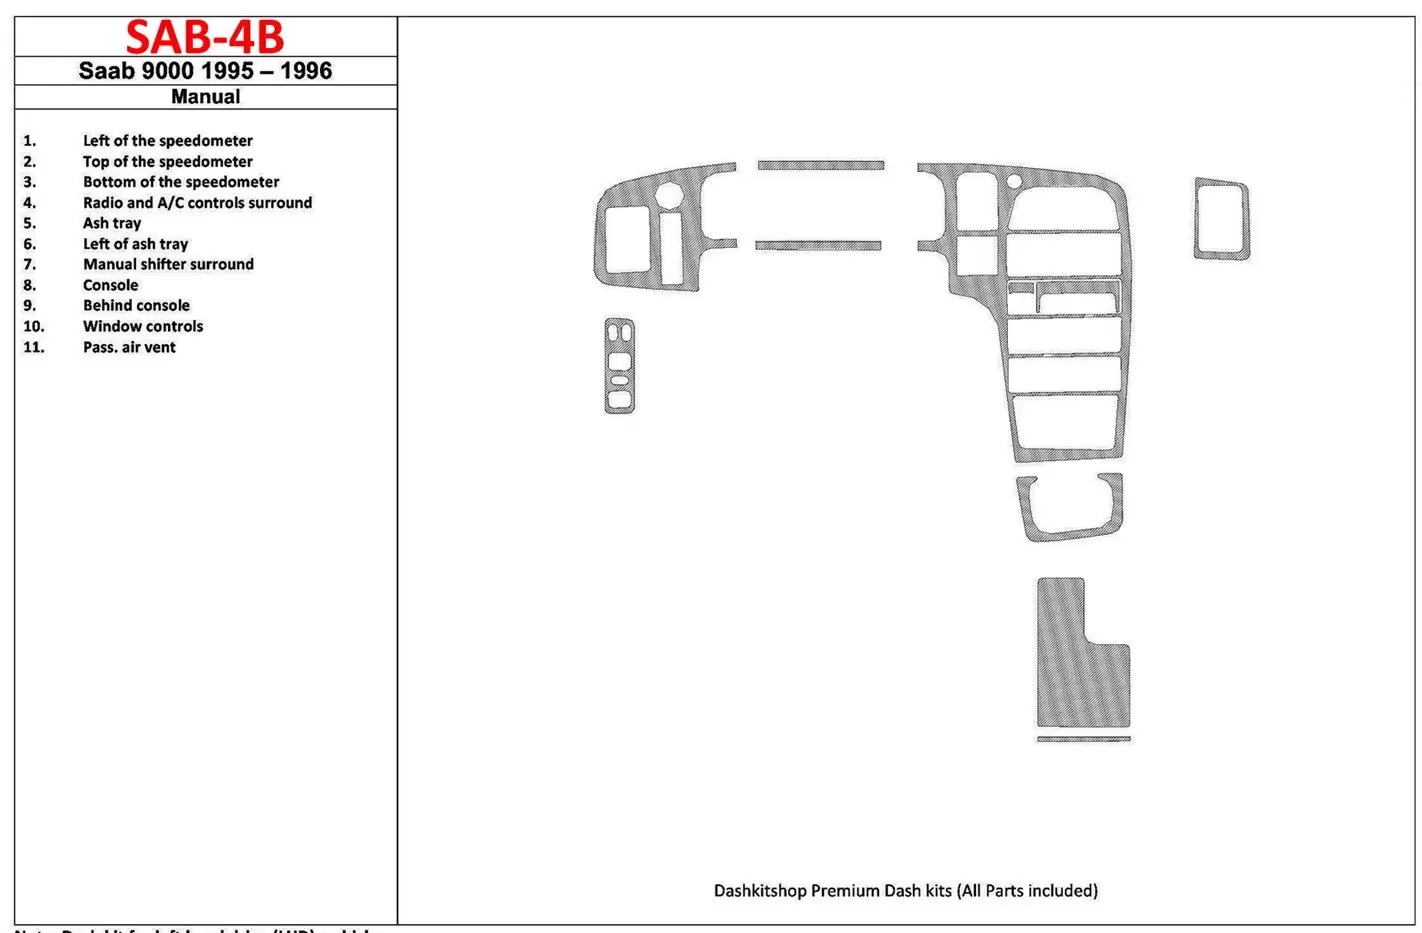 Saab 9000 1995-1996 Manual Gearbox, 11 Parts set Cruscotto BD Rivestimenti interni